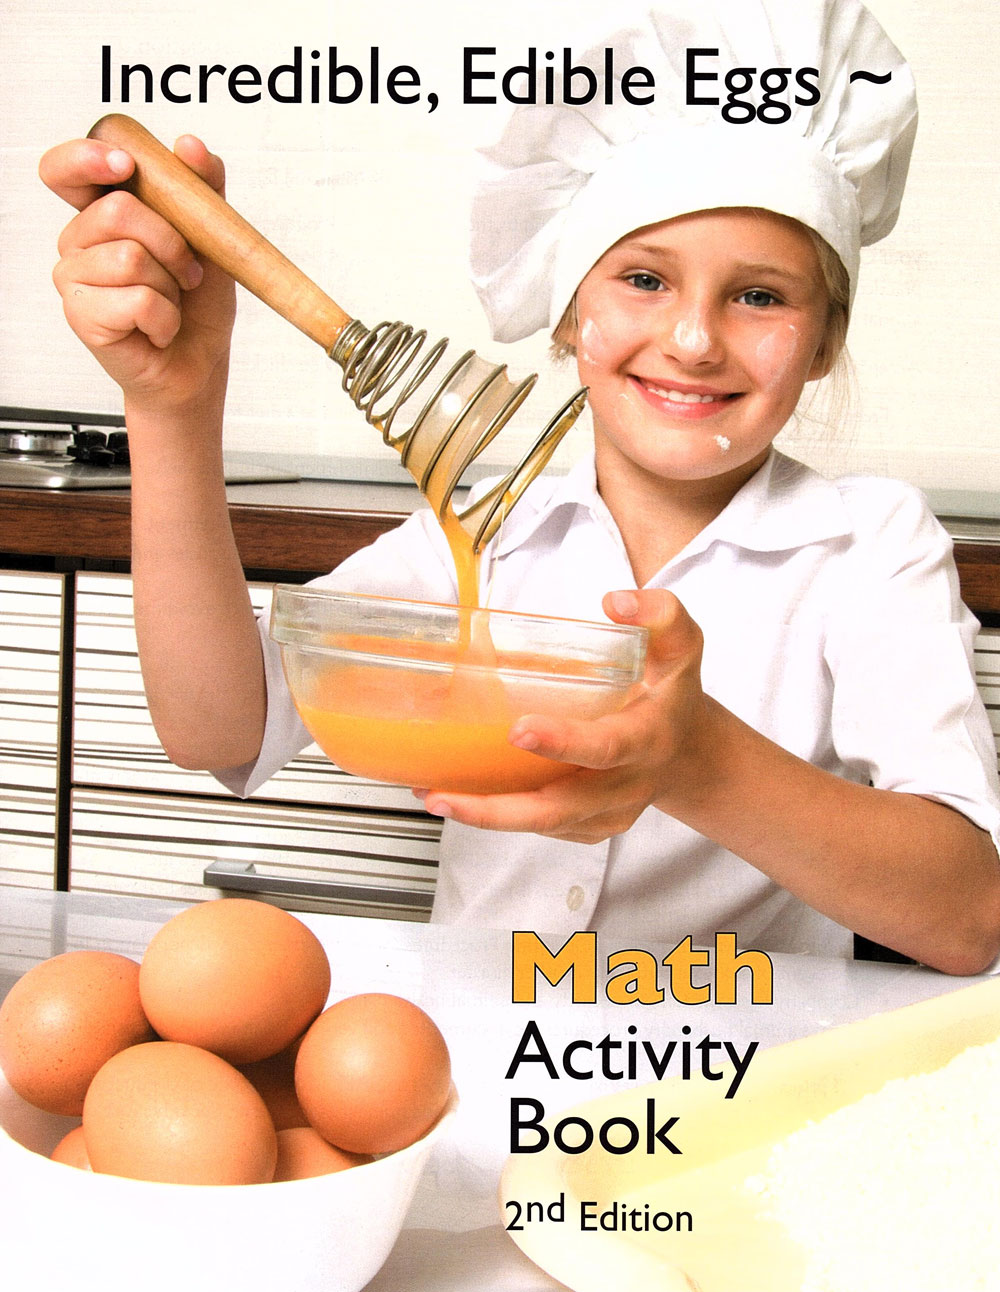 Incredible, Edible Eggs Math Activity Book